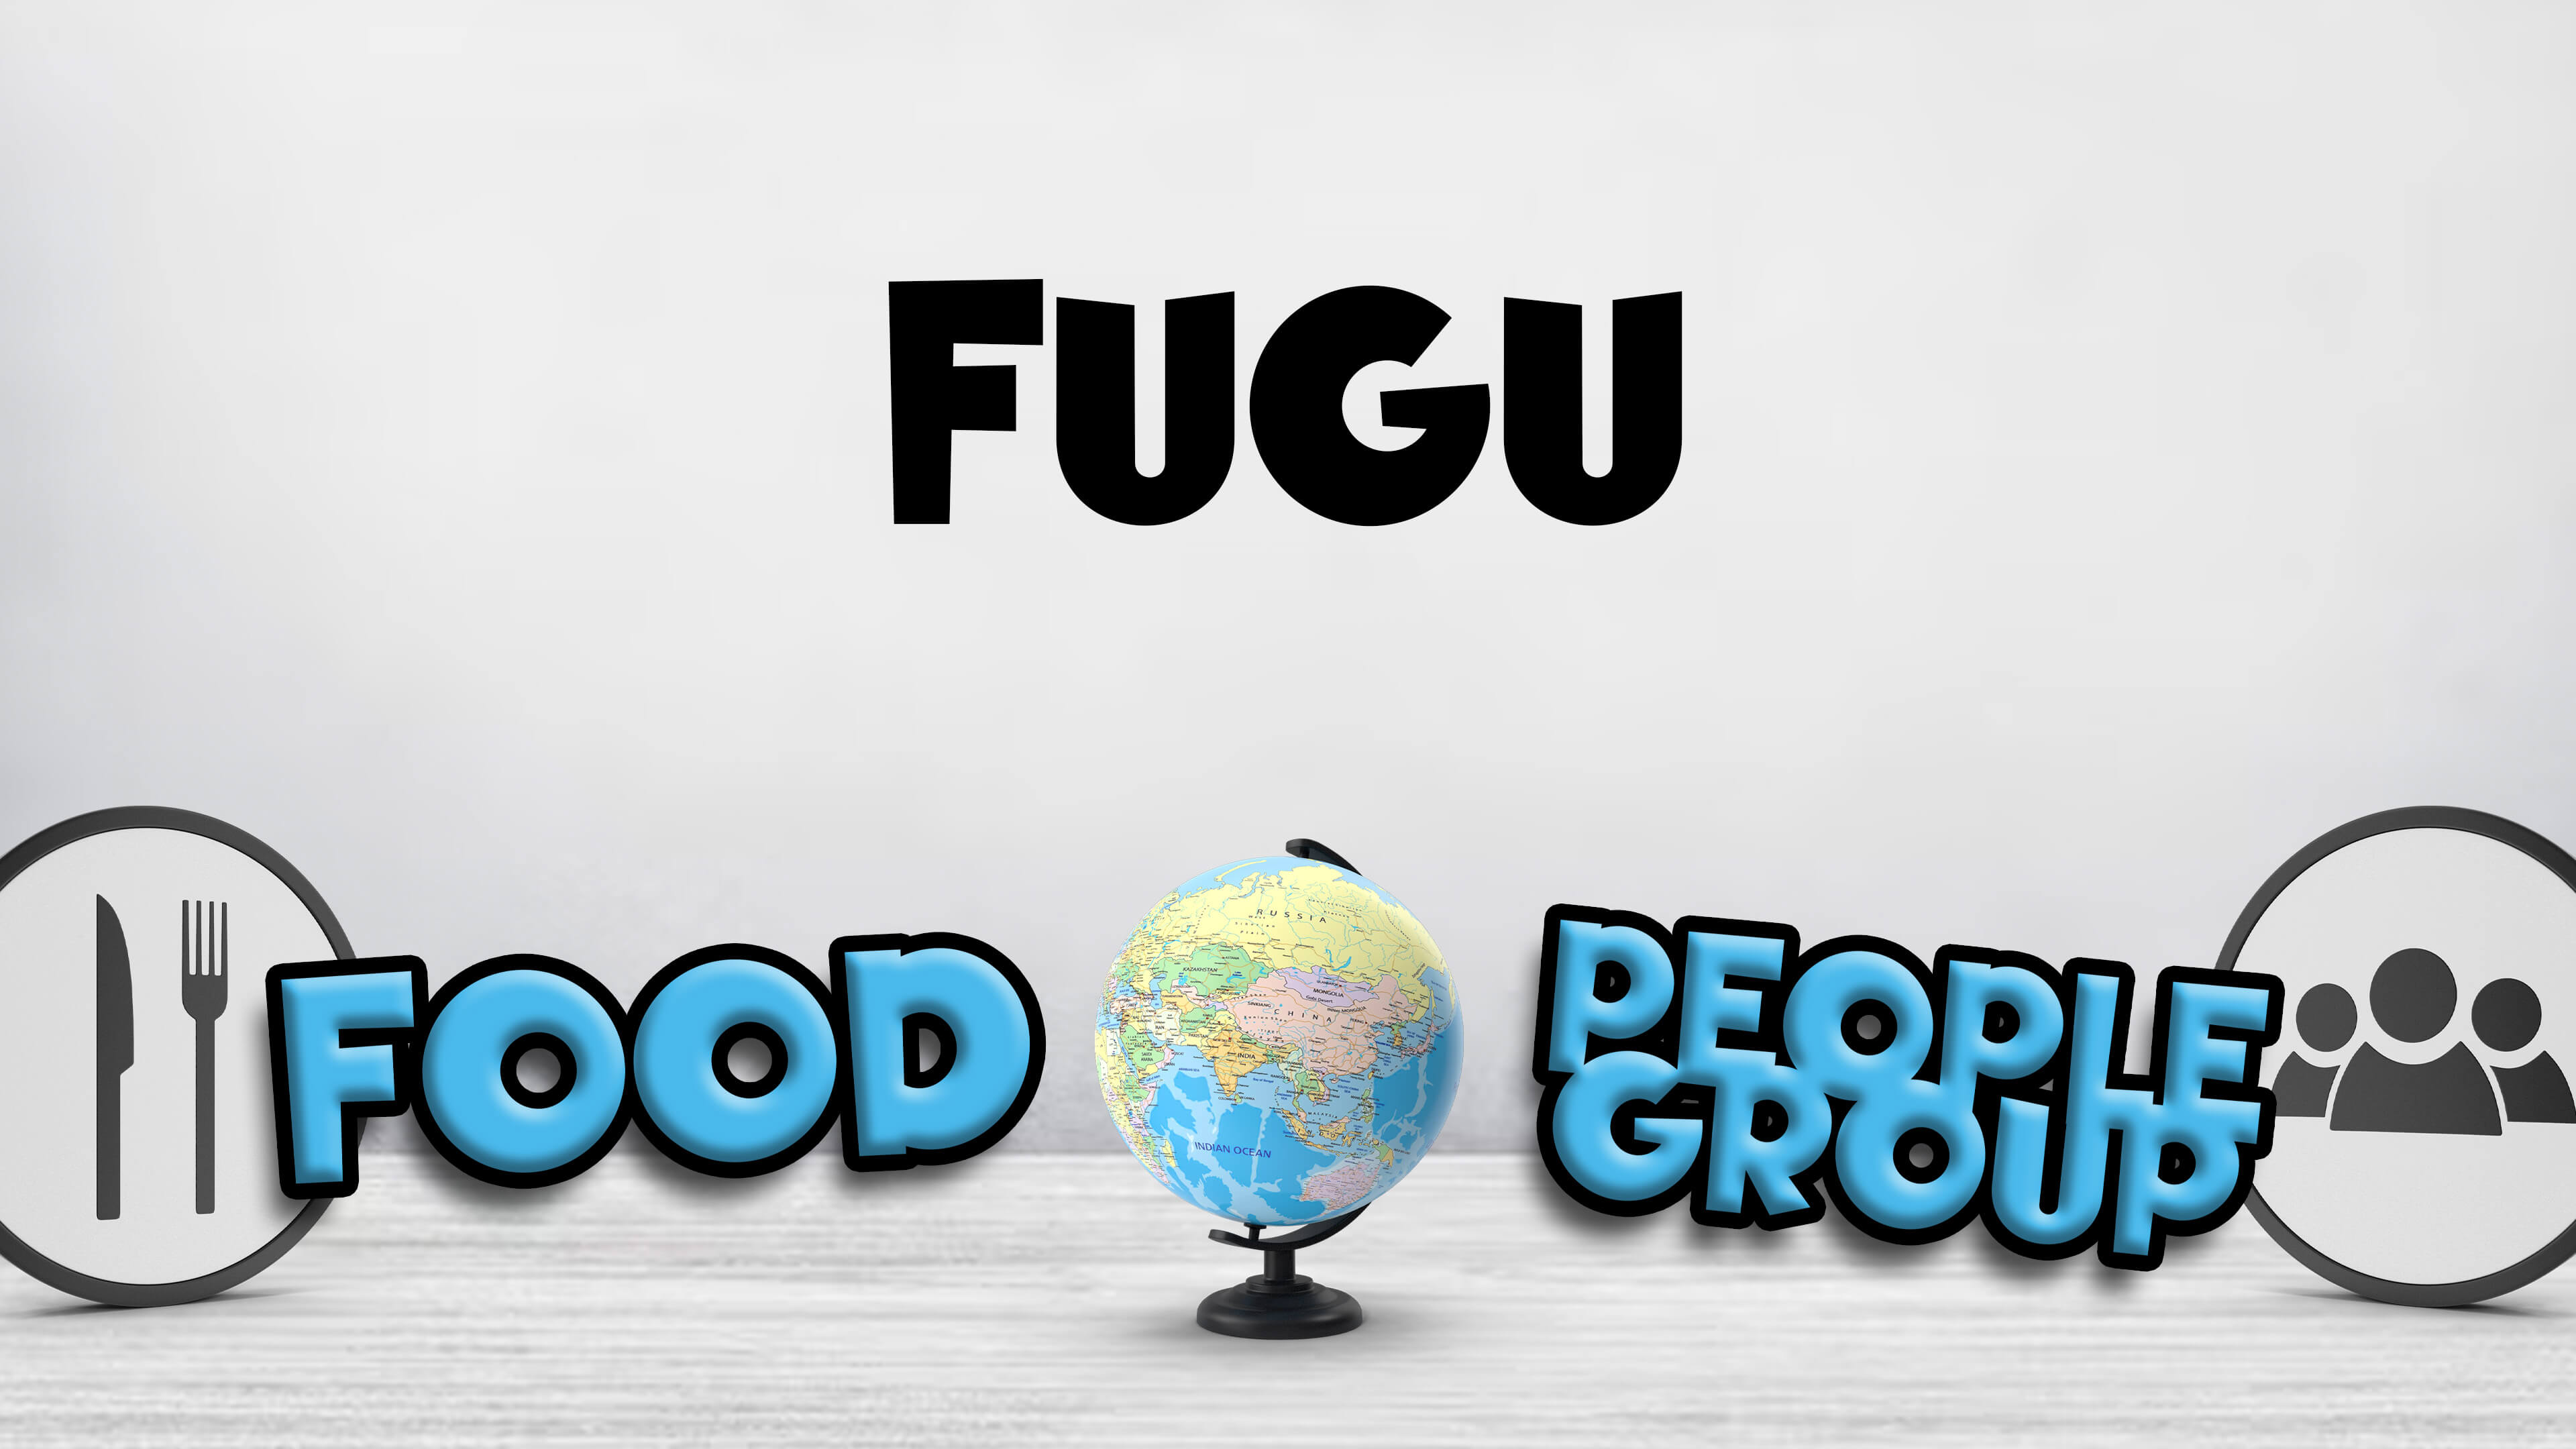 Food or People Group Volume 3